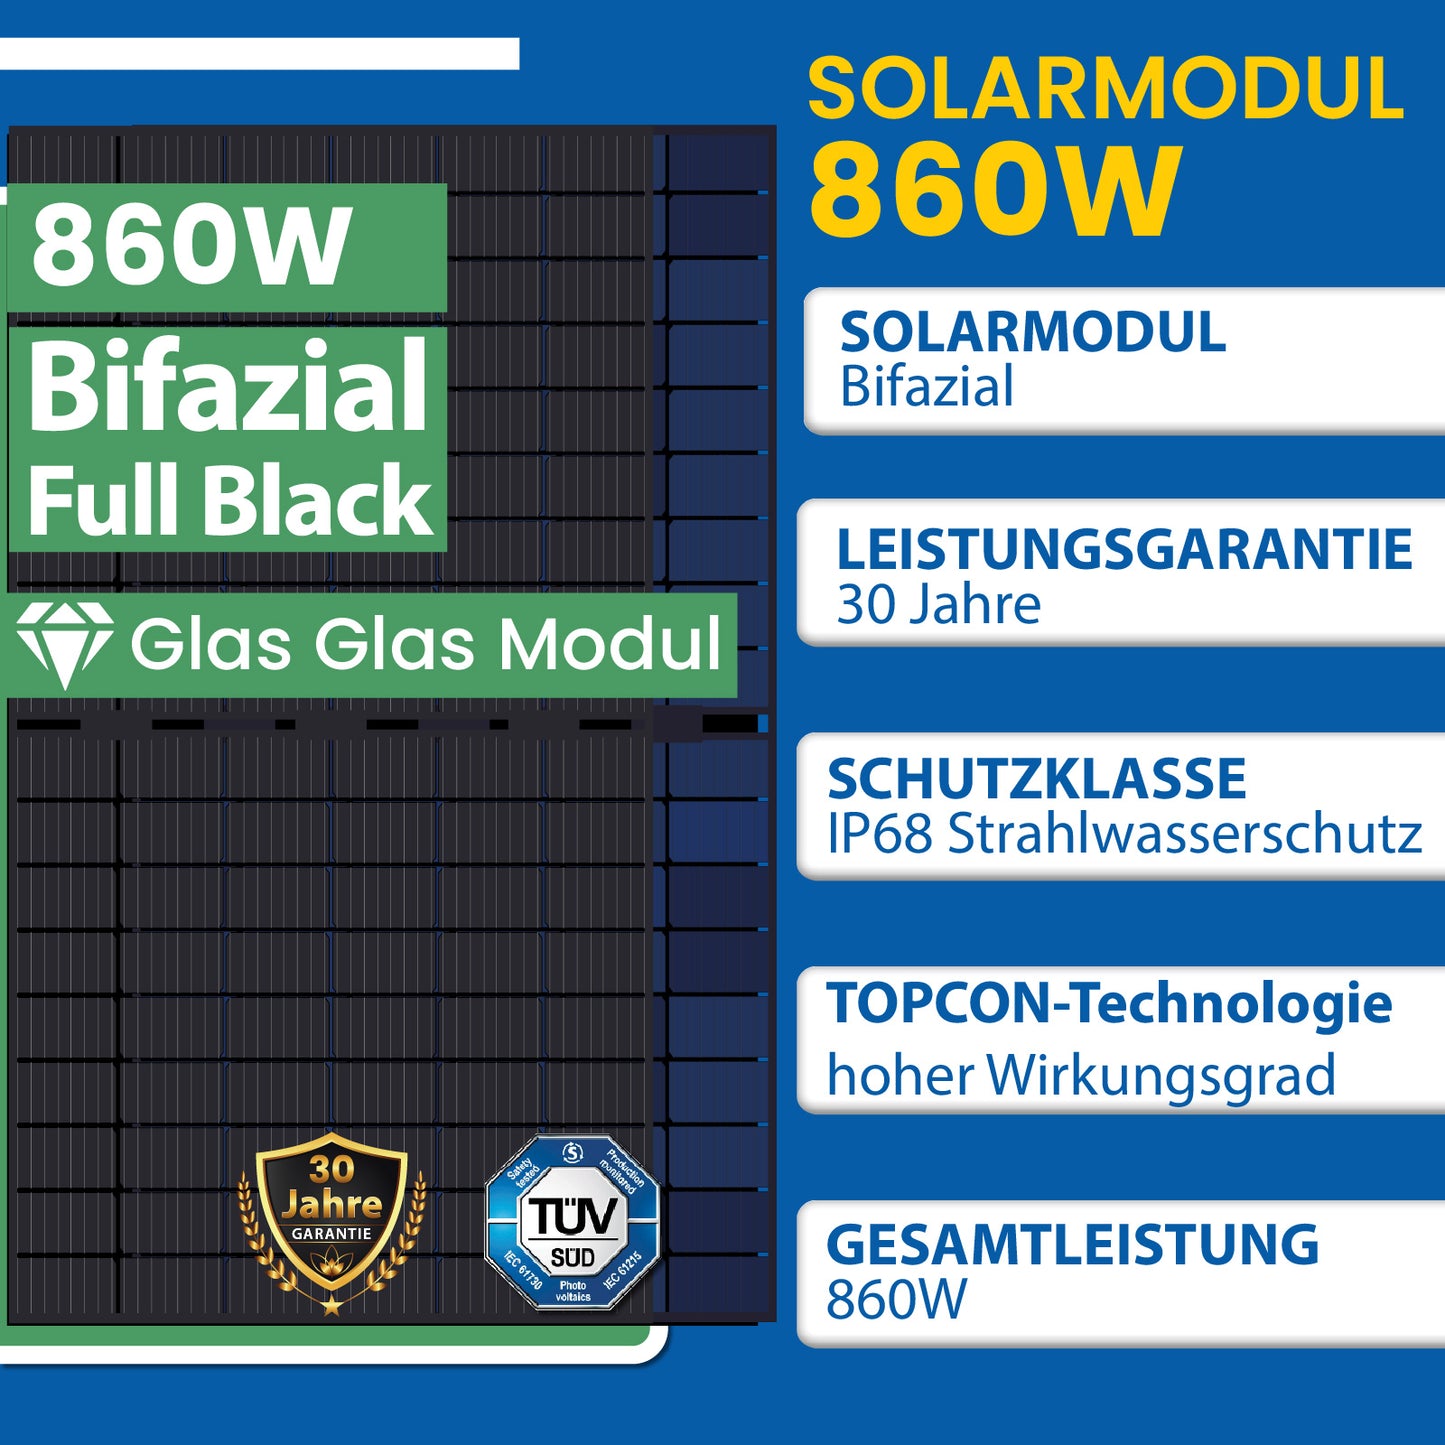 860W Balkonkraftwerk Set inkl. 2x430W Bifaziale Solarmodule, Anker SOLIX Solarbank E1600 Solarspeicher, 10m Schukostecker und Neu Generation Upgradefähiger Deye 800W WIFI Wechselrichter mit Relais